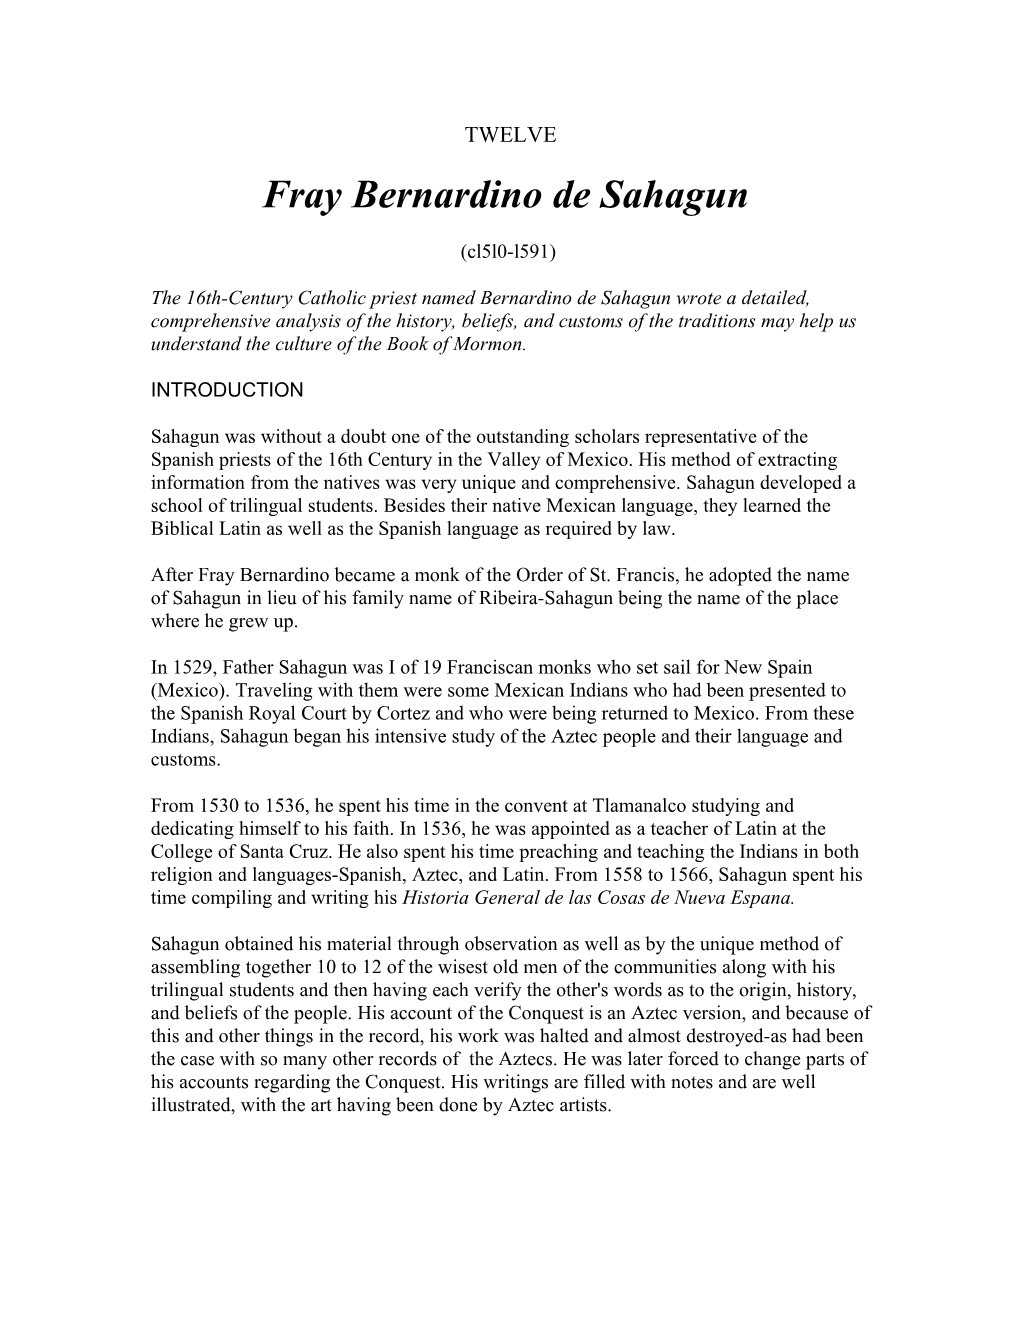 Fray Bernardino De Sahagun